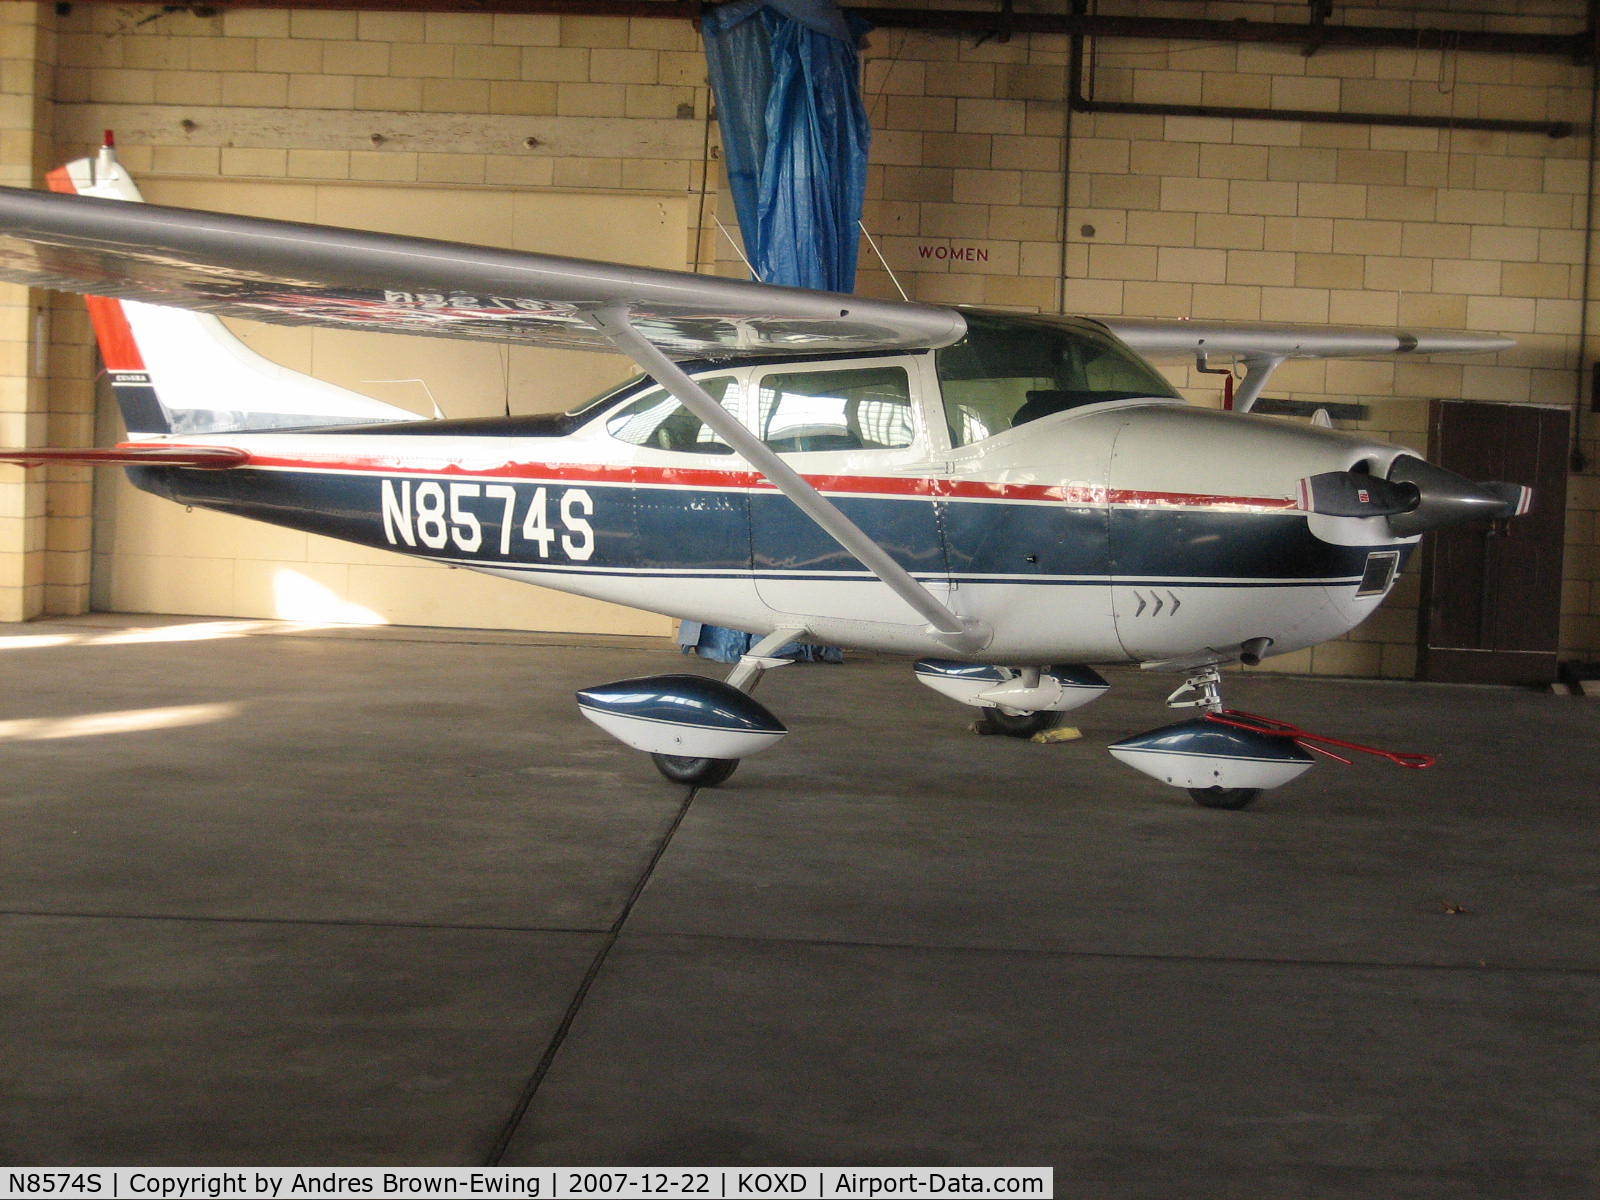 N8574S, 1965 Cessna 182H Skylane C/N 18256674, one of the planes based here